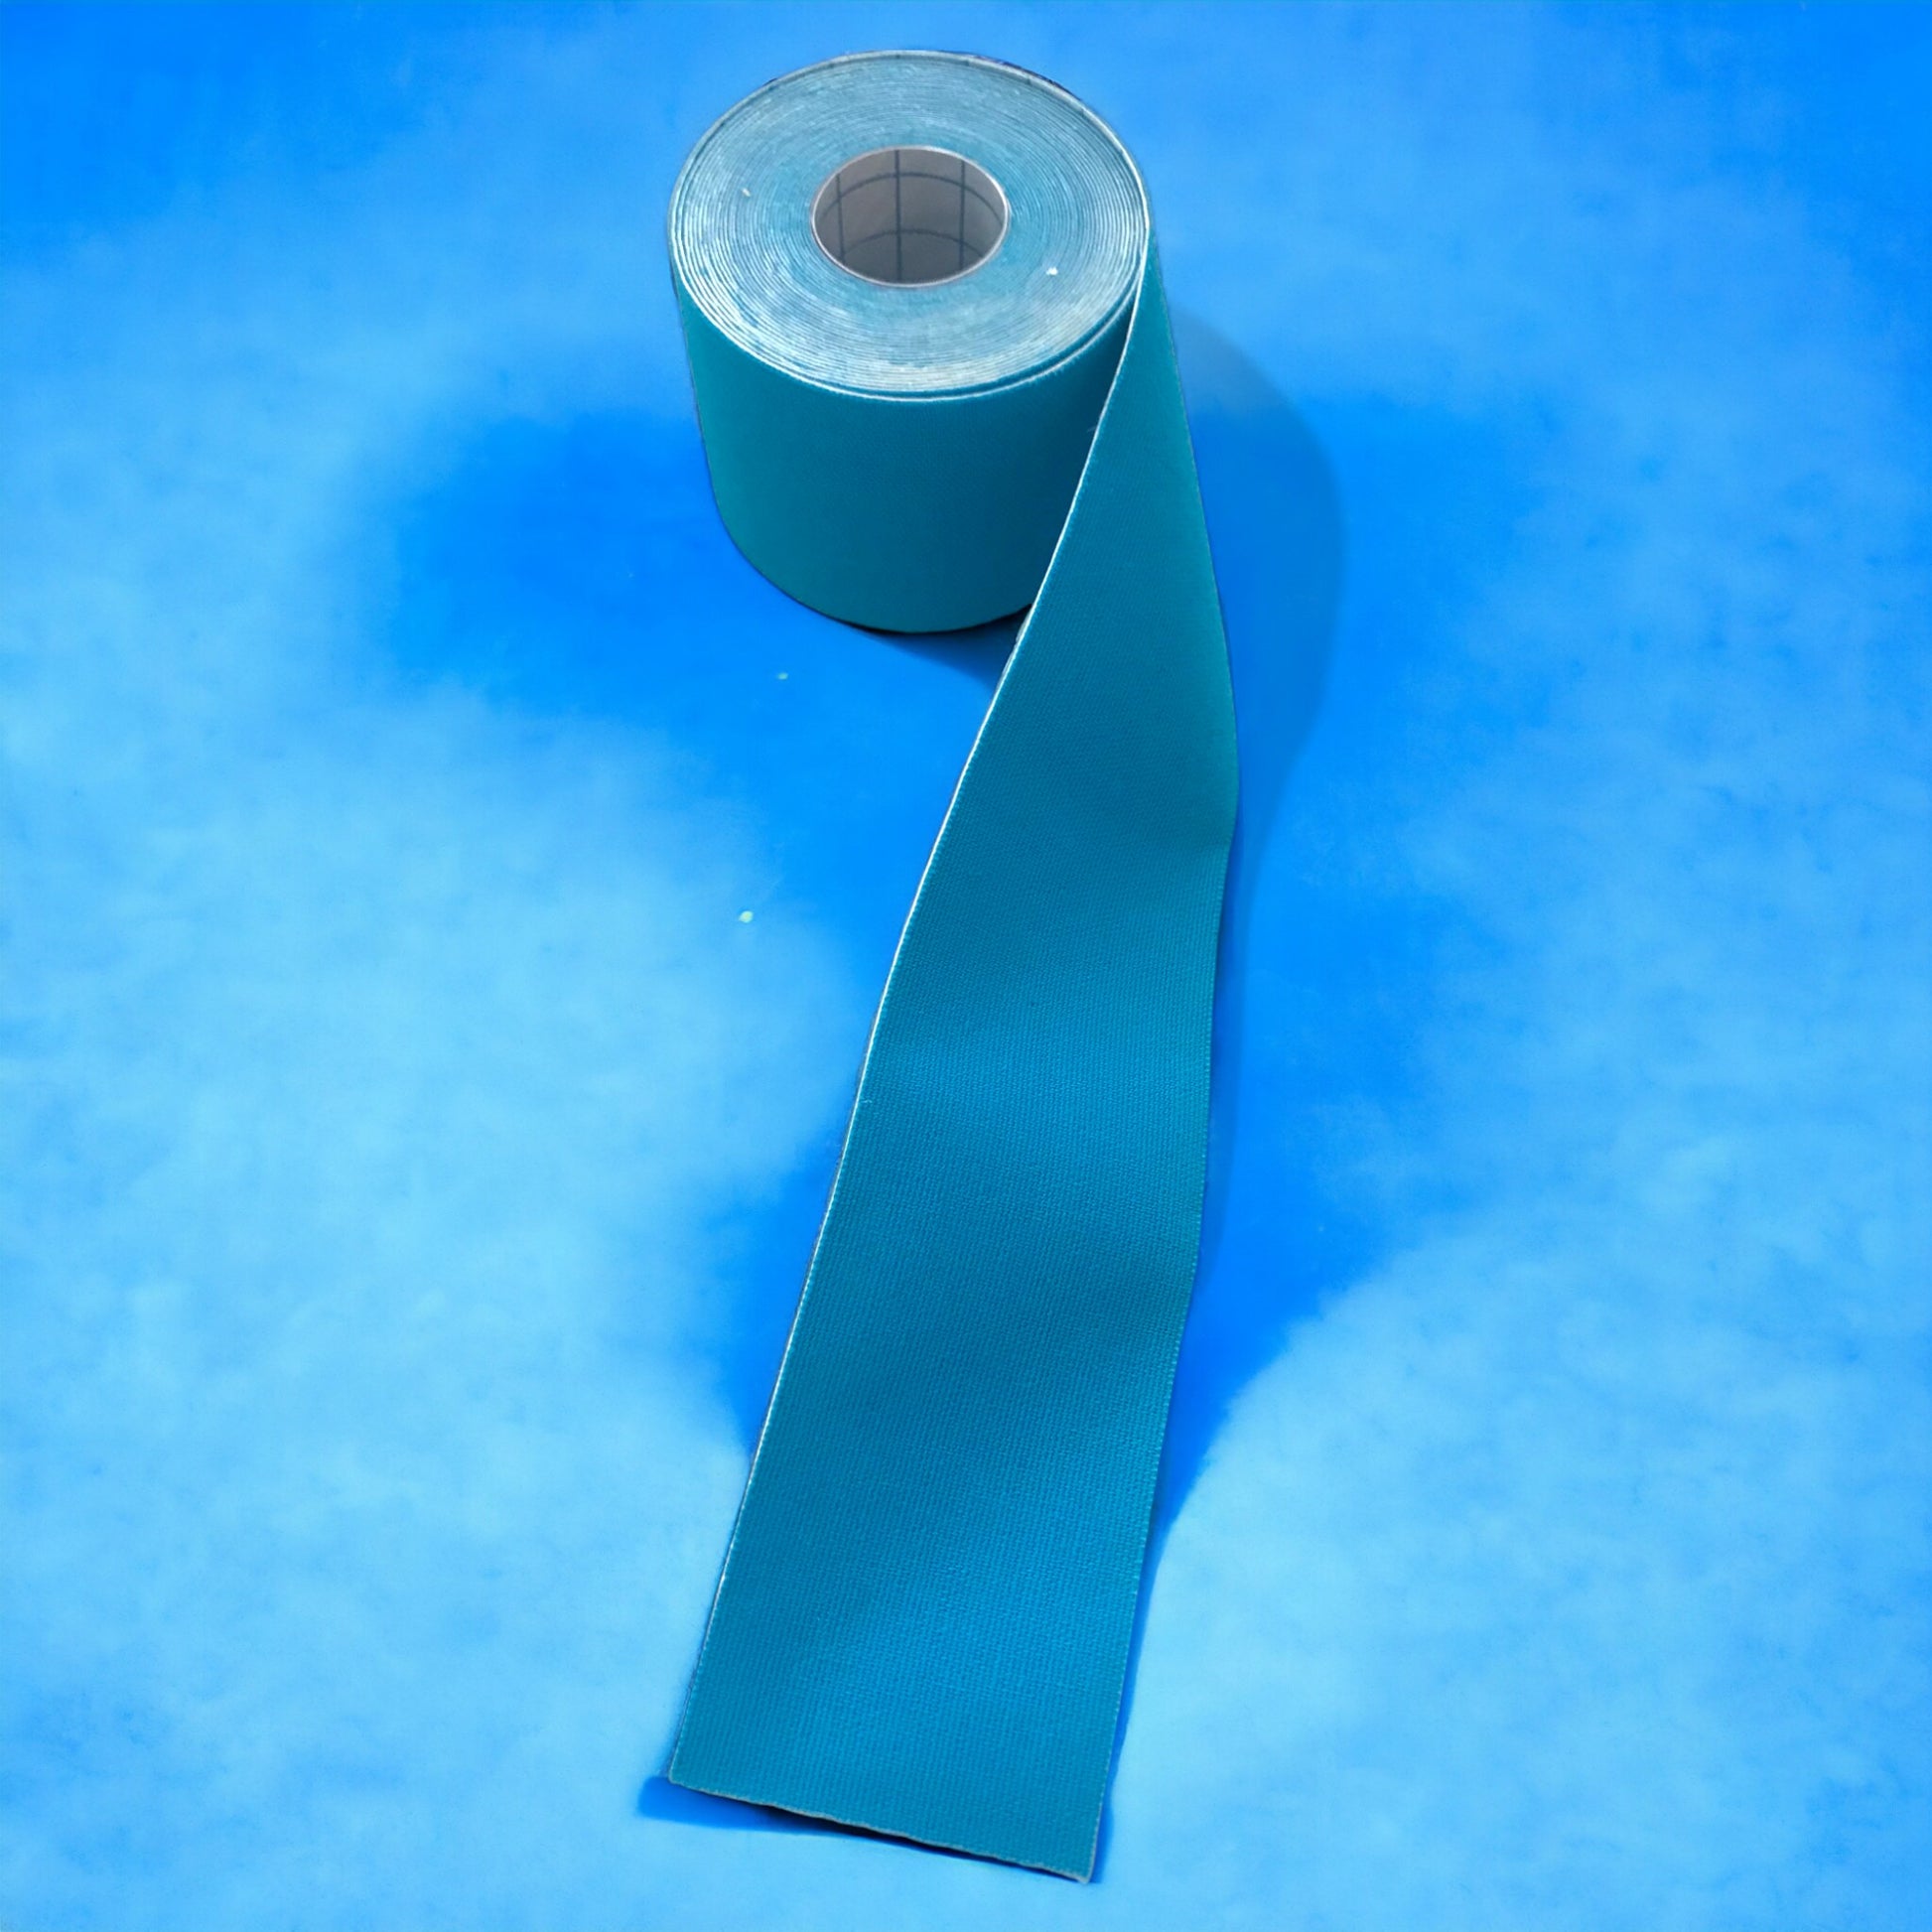 Zuverlässiges Kinesiologie Tape - 5 cm x 5 m - Verpackungseinheit mit 6 Rollen für langanhaltende Unterstützung.